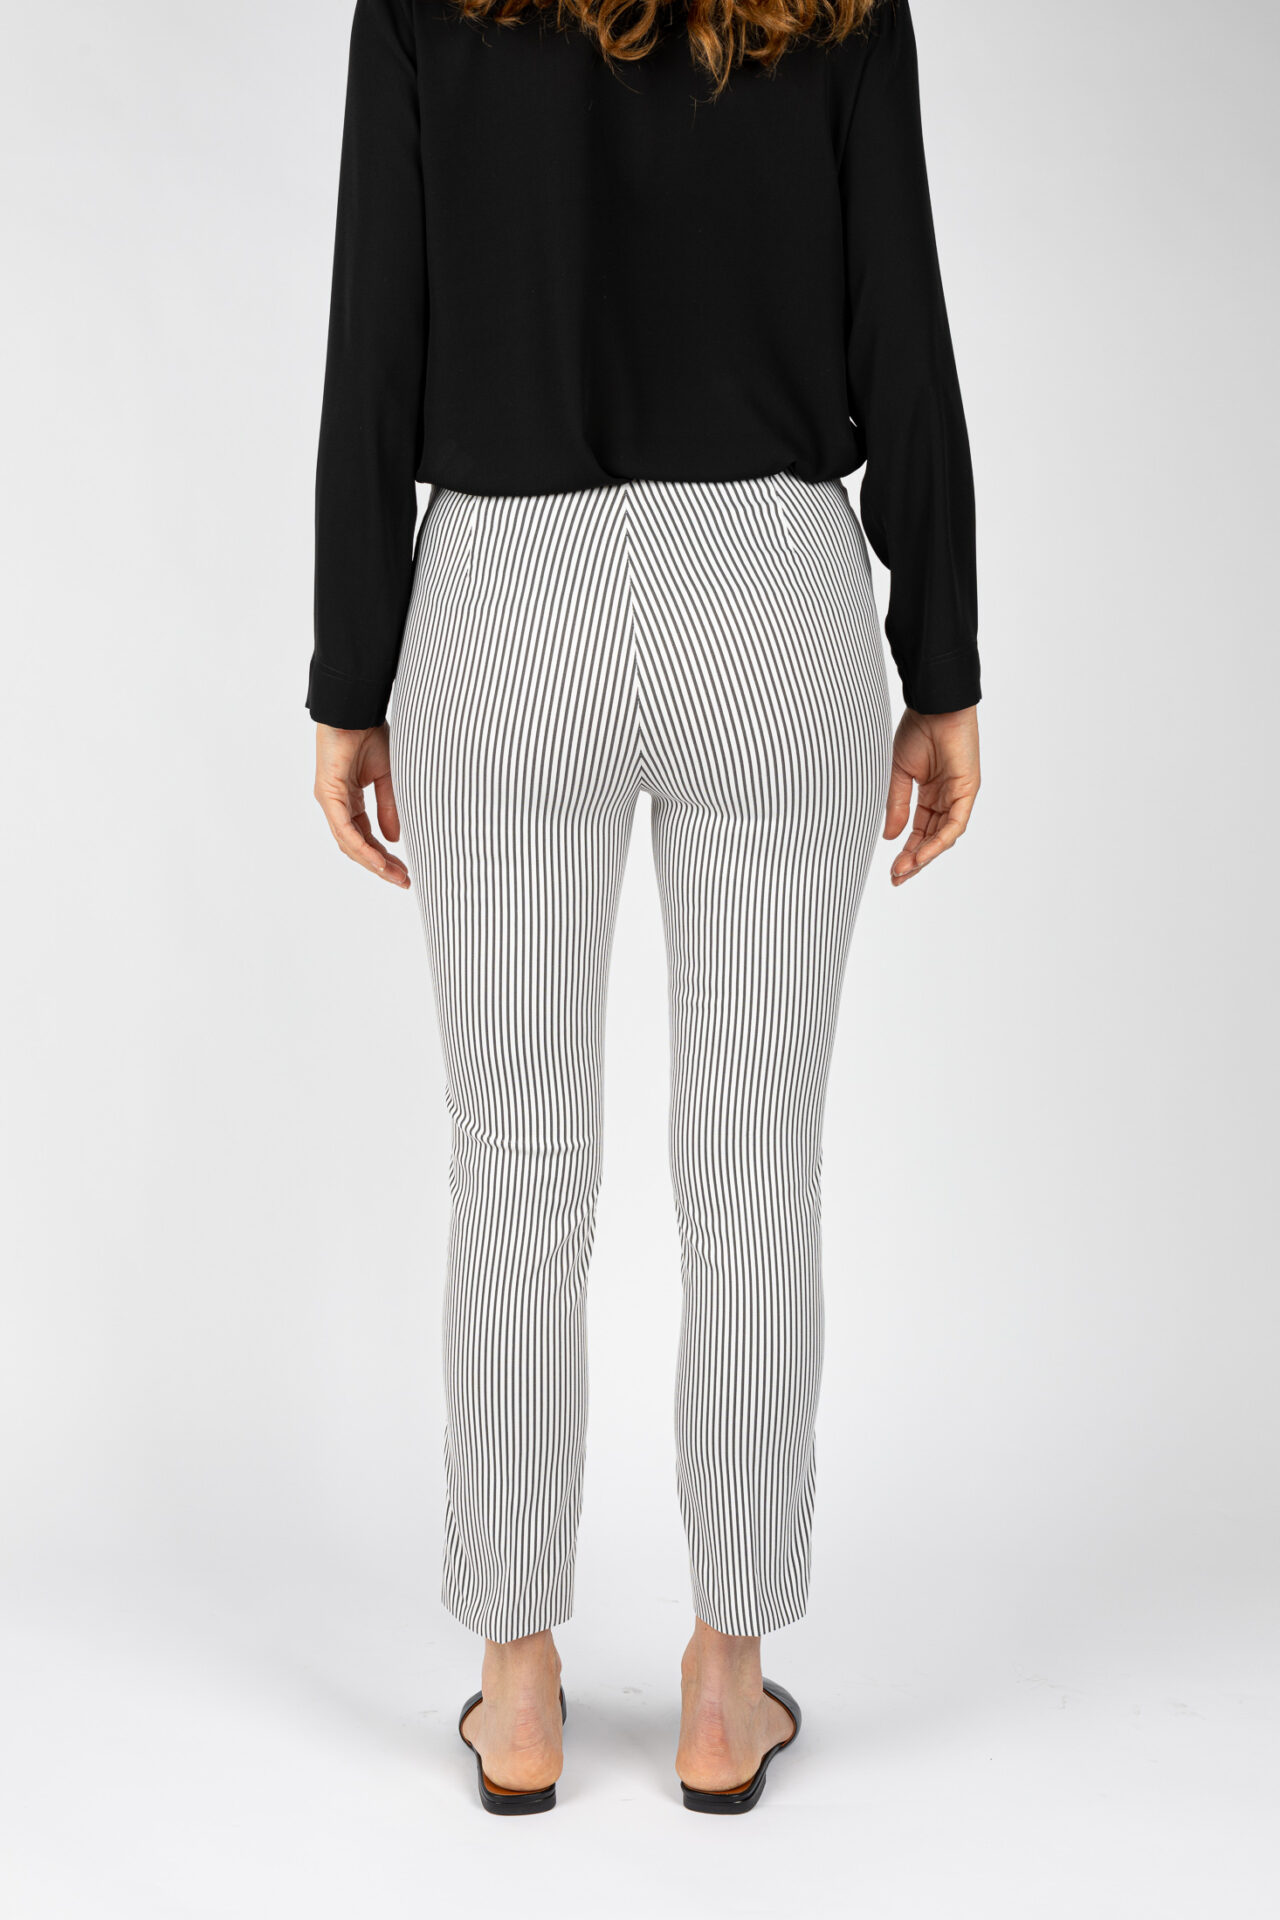 Pantaloni a riga colore nero da donna linea stretta - P19614E NERO - 4